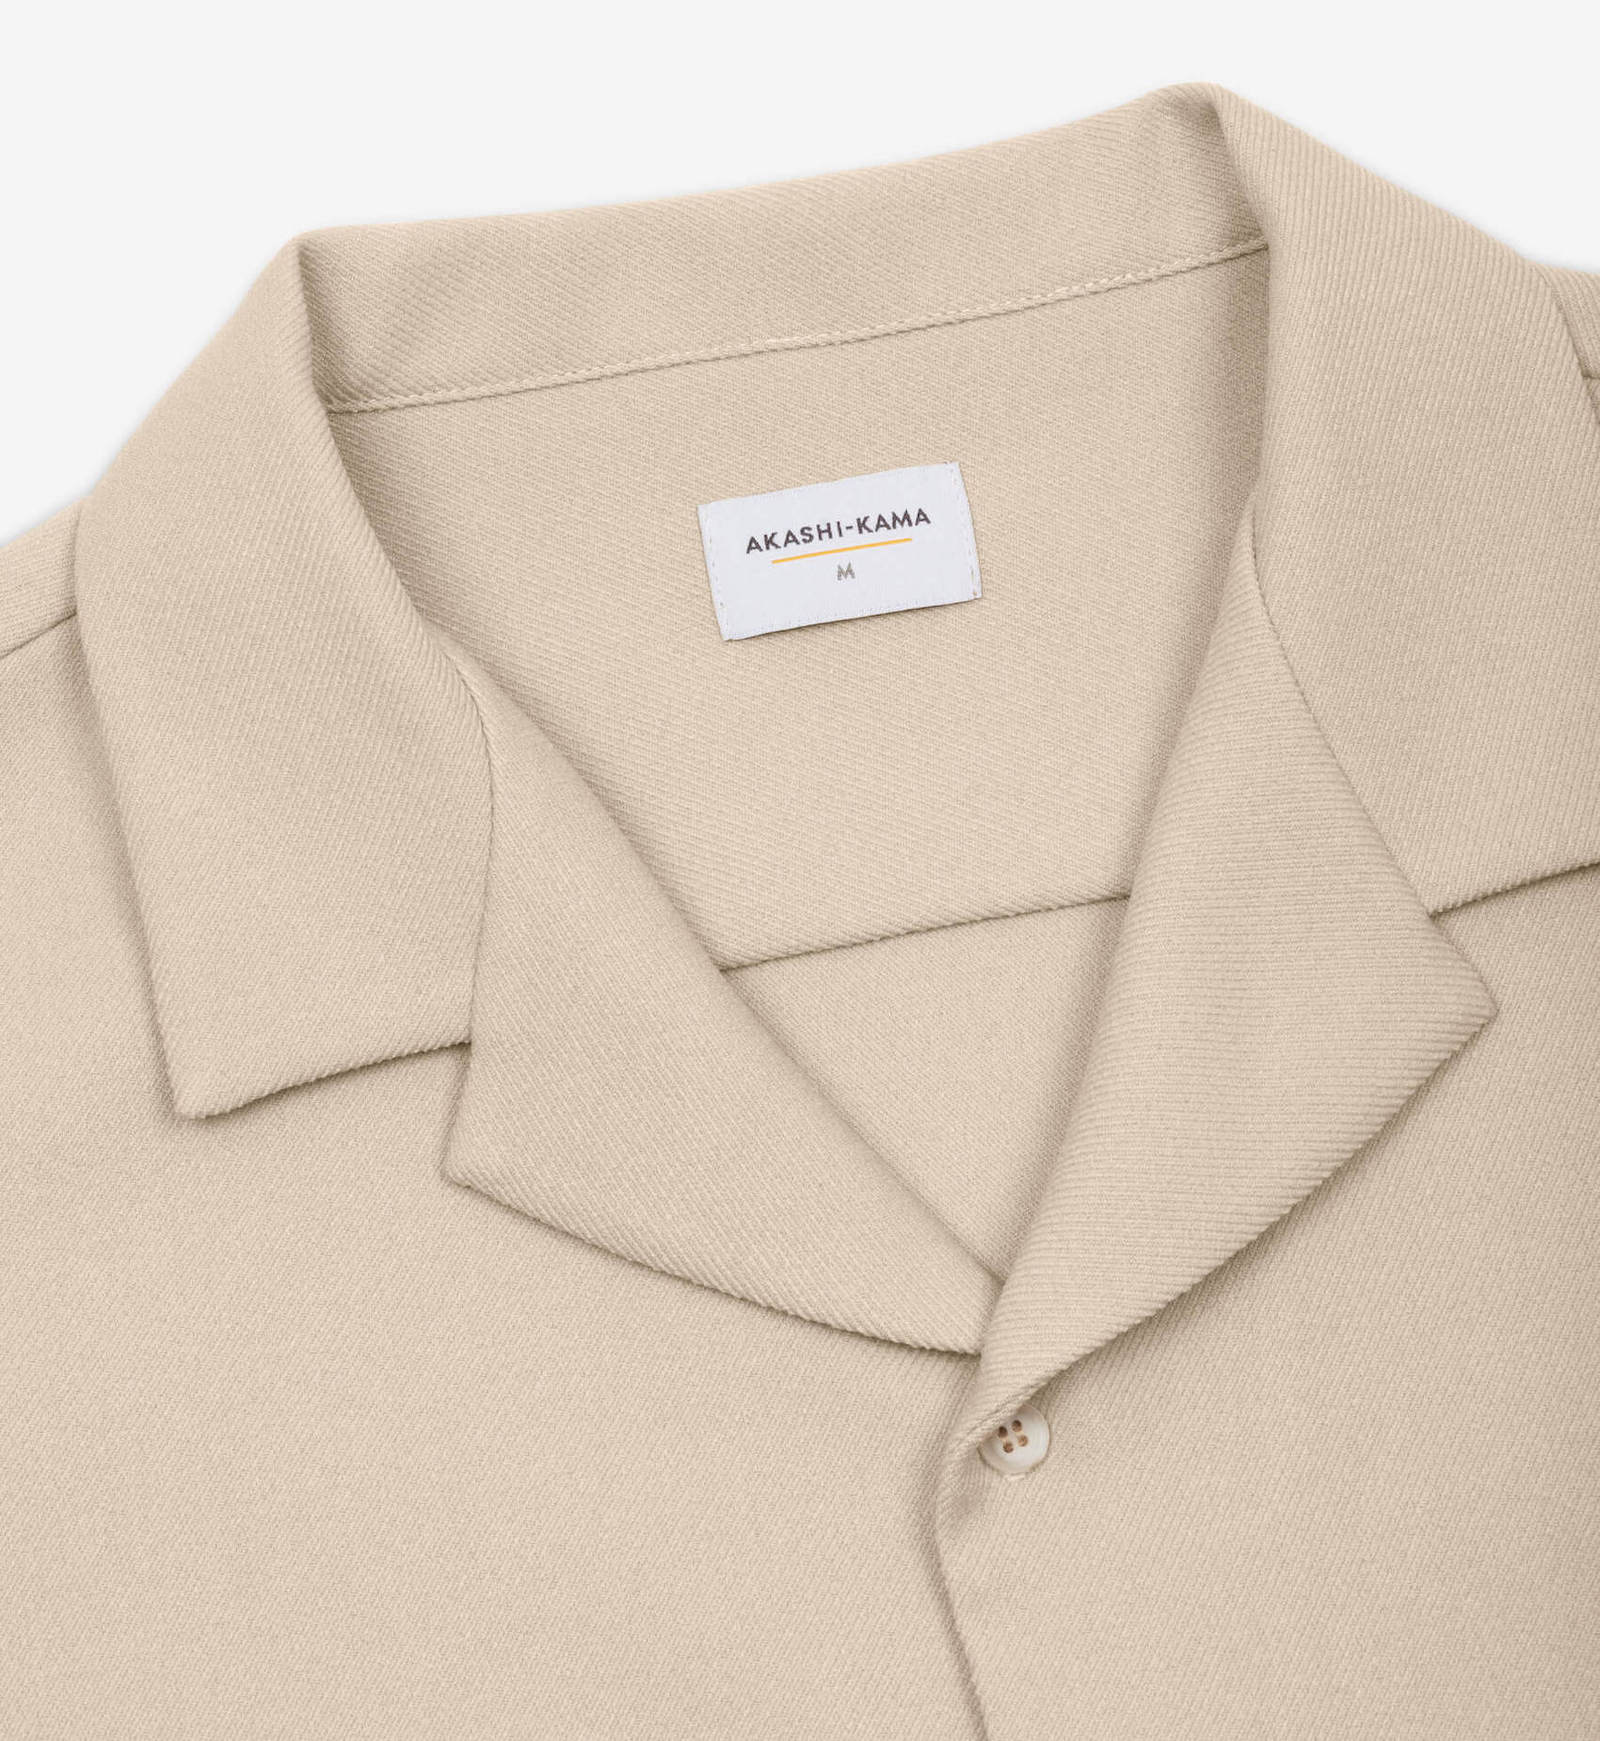 AKASHI-KAMA Button Down Shirt Camp Collar Style in Enoki | Made in USA Japanese Streetwear 